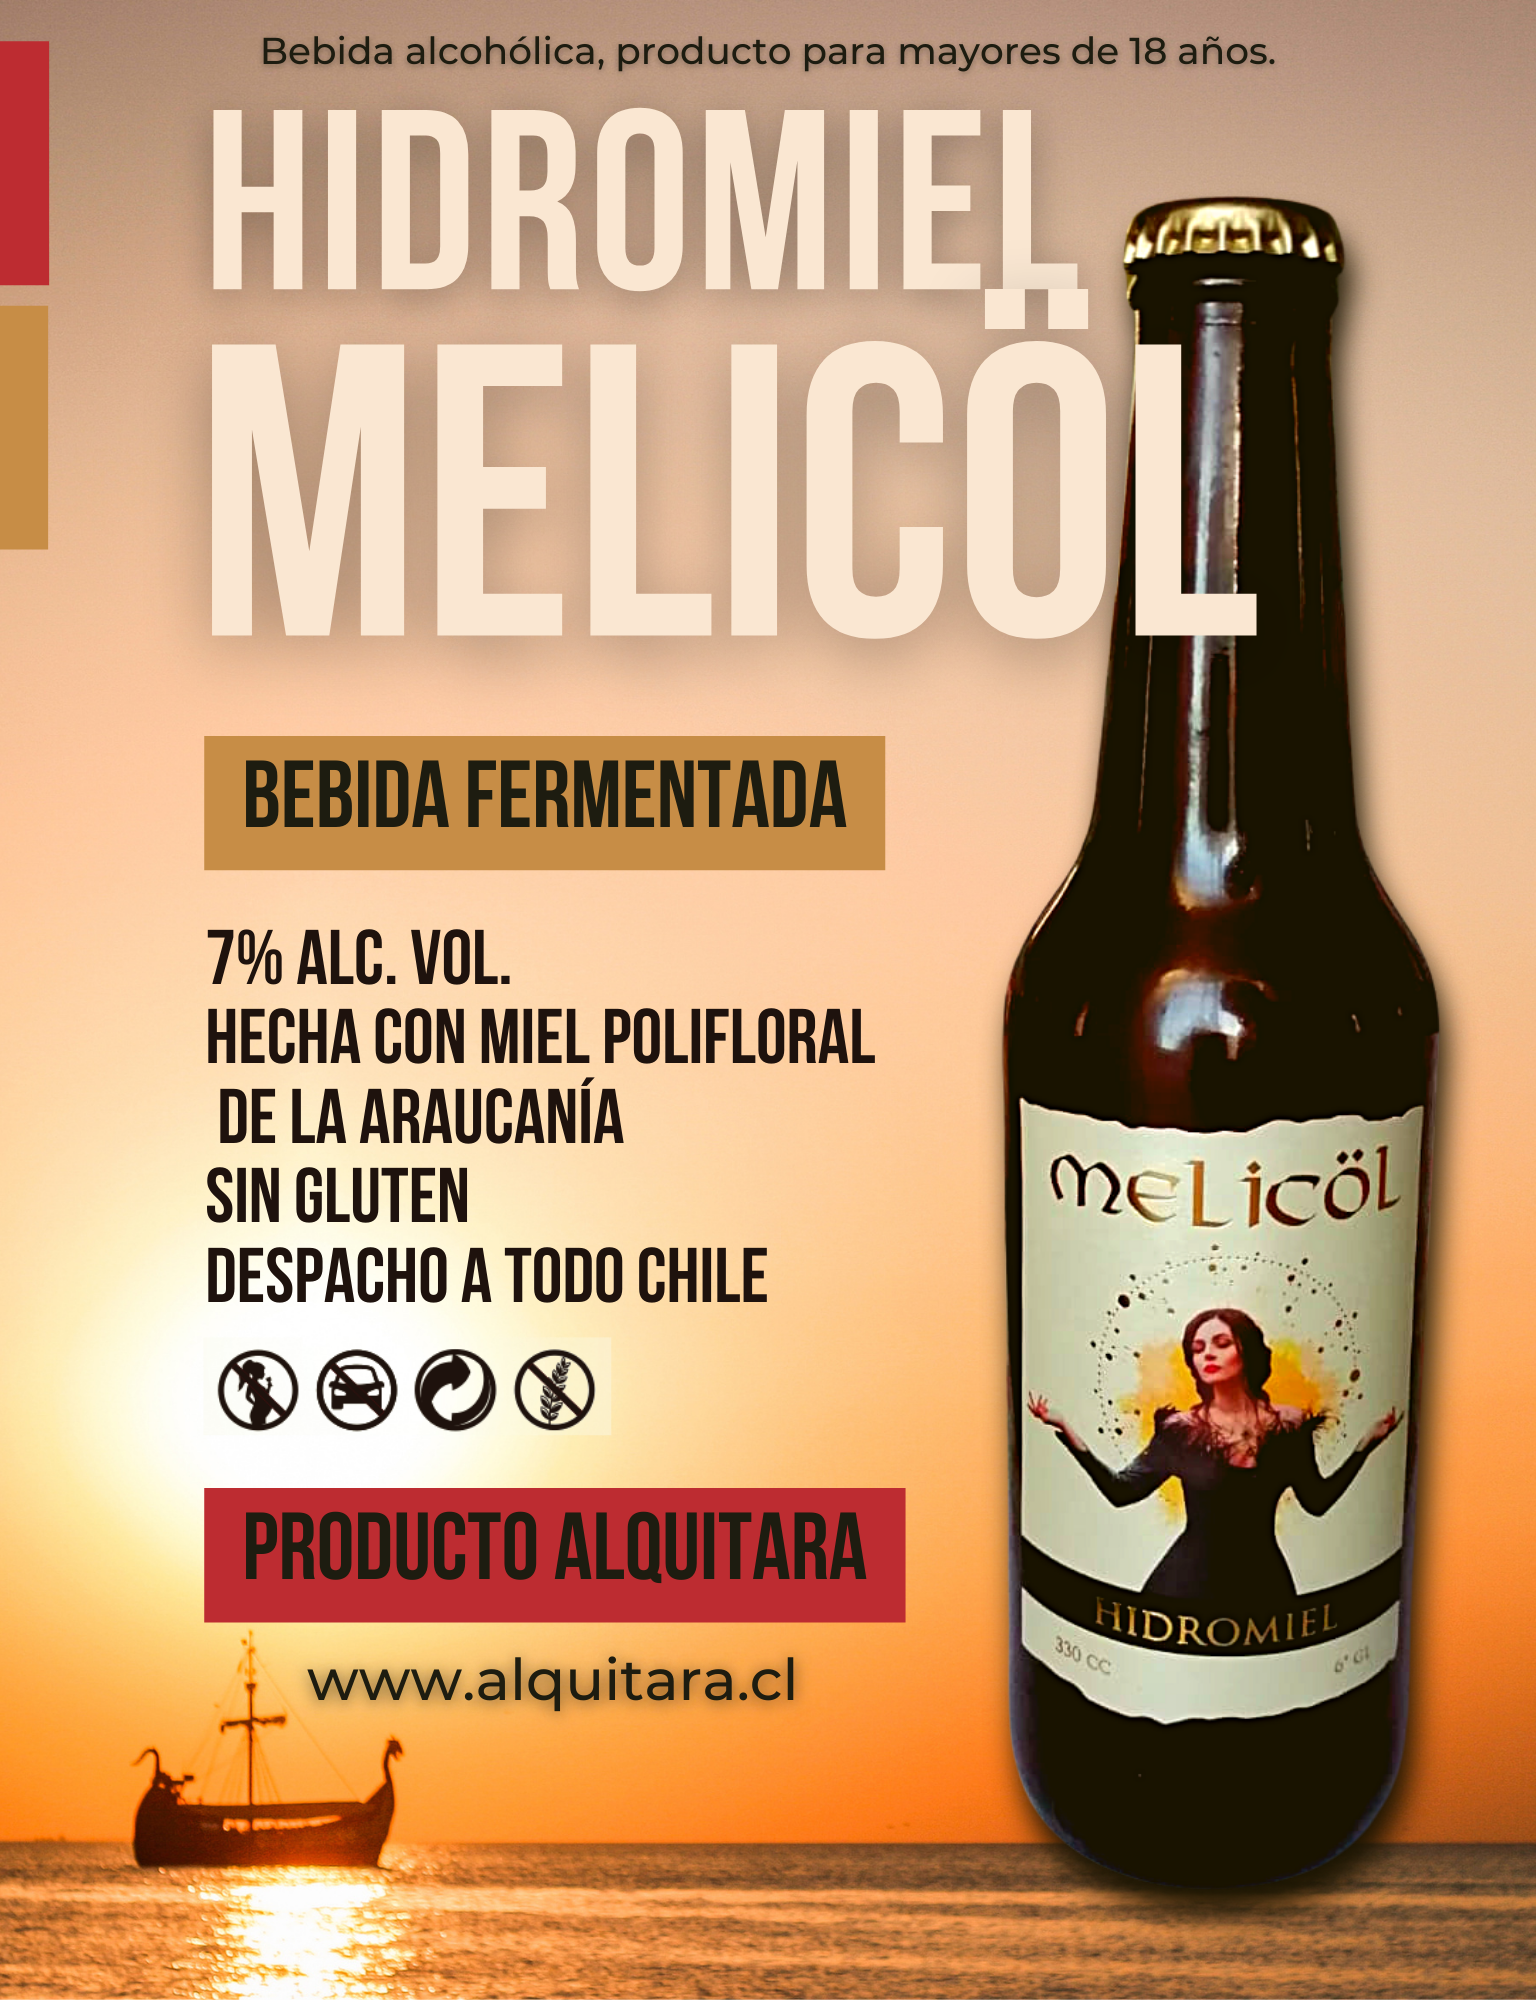 La imagen muestra un póster publicitario de la bebida alcohólica Hidromiel Melicol. La imagen de la botella de Melicol se muestra en el lado derecho con su etiqueta característica y en el fondo se observa un atardecer con un barco vikingo drakkar, lo que sugiere la naturalidad y la tradición del producto.